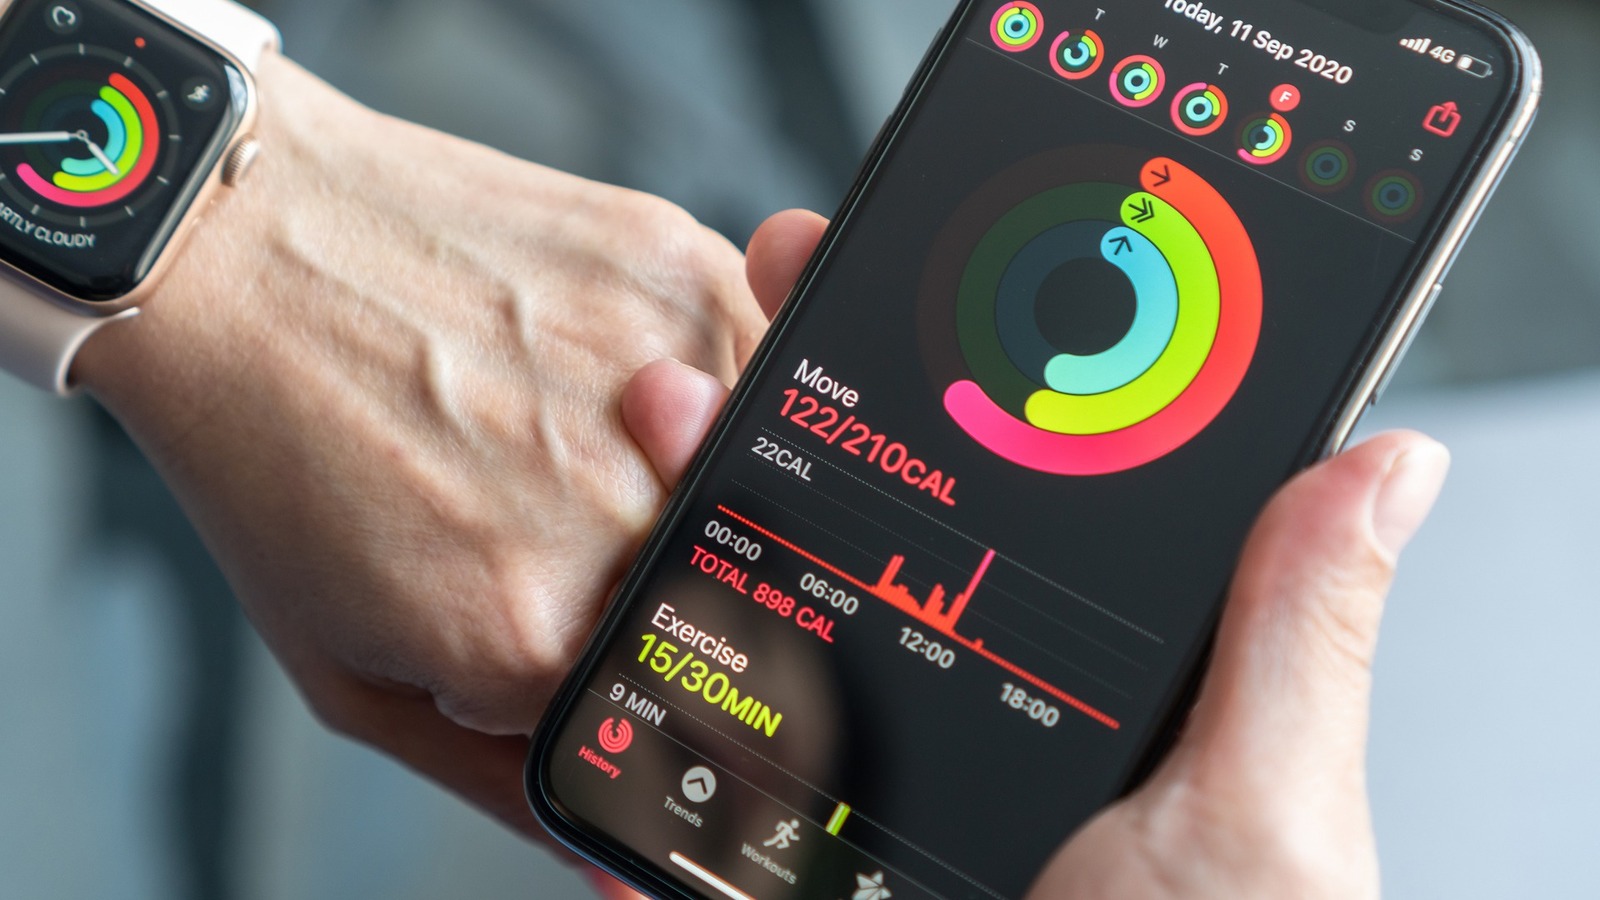 ¿Cómo calcula el Apple Watch las calorías quemadas y es preciso?